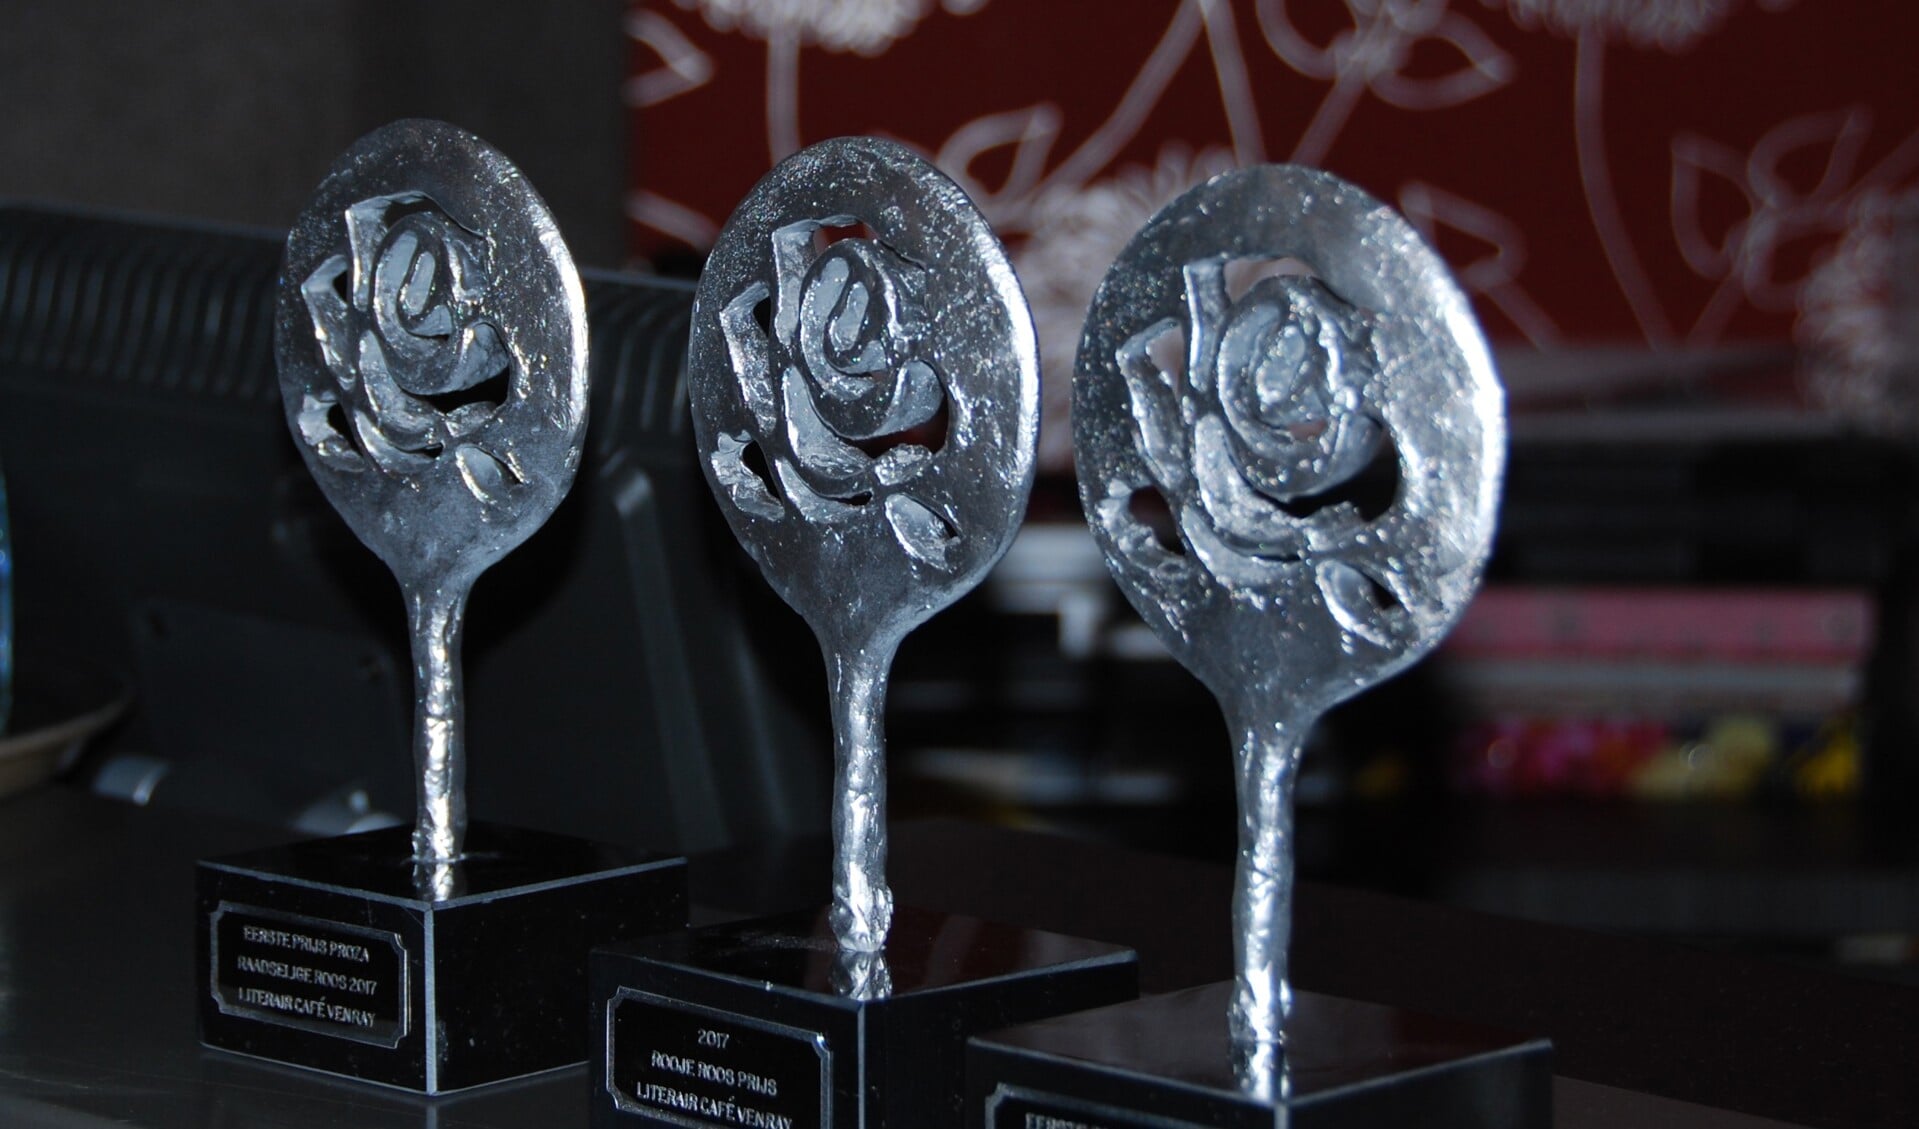 De trofee die aan de nummer één van de diverse categorieën werd uitgereikt. Deze trofee is door Liesbeth Rutten ontworpen.